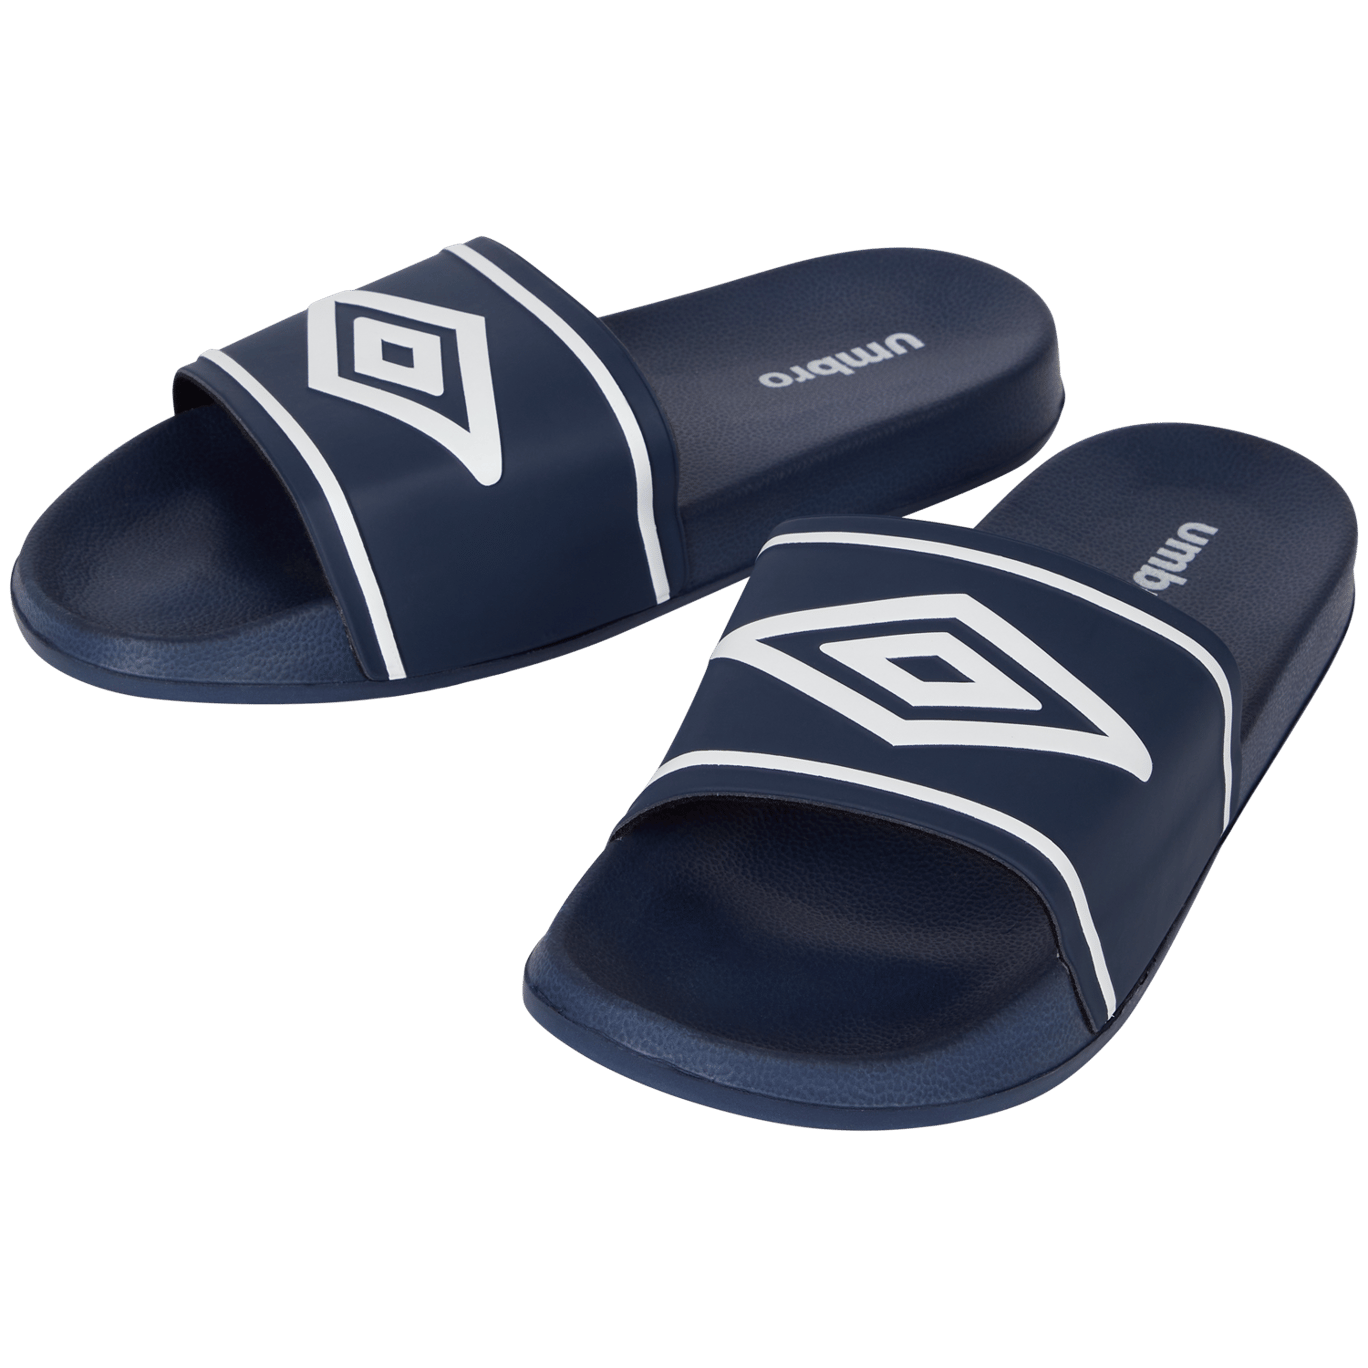 Verrijking Sortie rijkdom Umbro slippers | Action.com